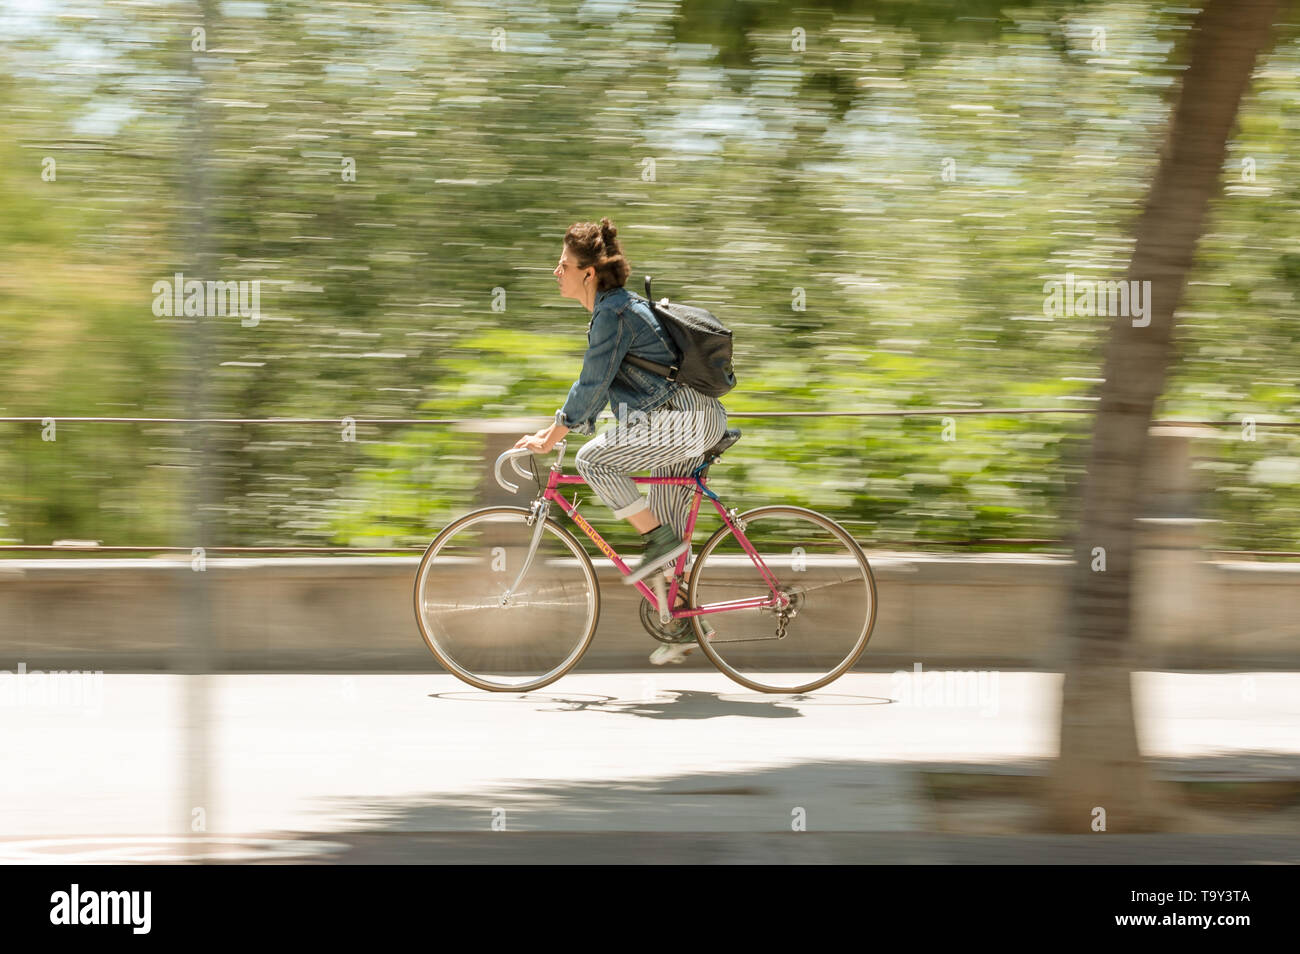 Cordoba, Spanien - 10. Mai 2019: Frau Radfahrer mit gestreiften Hosen Reiten durch die Straße. Stockfoto